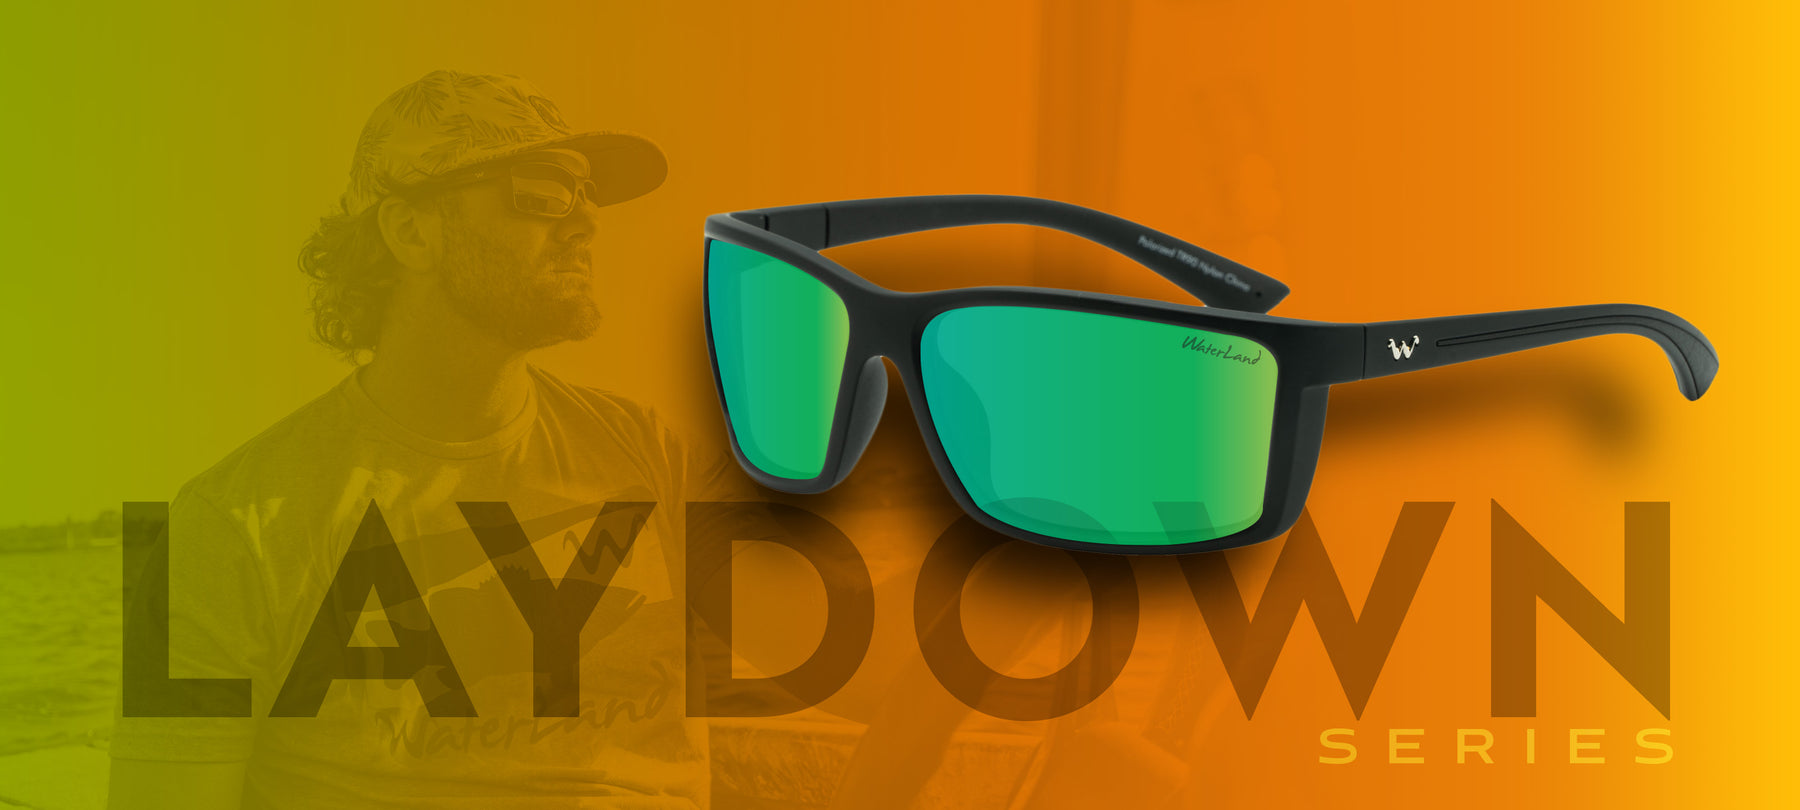 WaterLand Co. - Sunglasses - Laydown Series